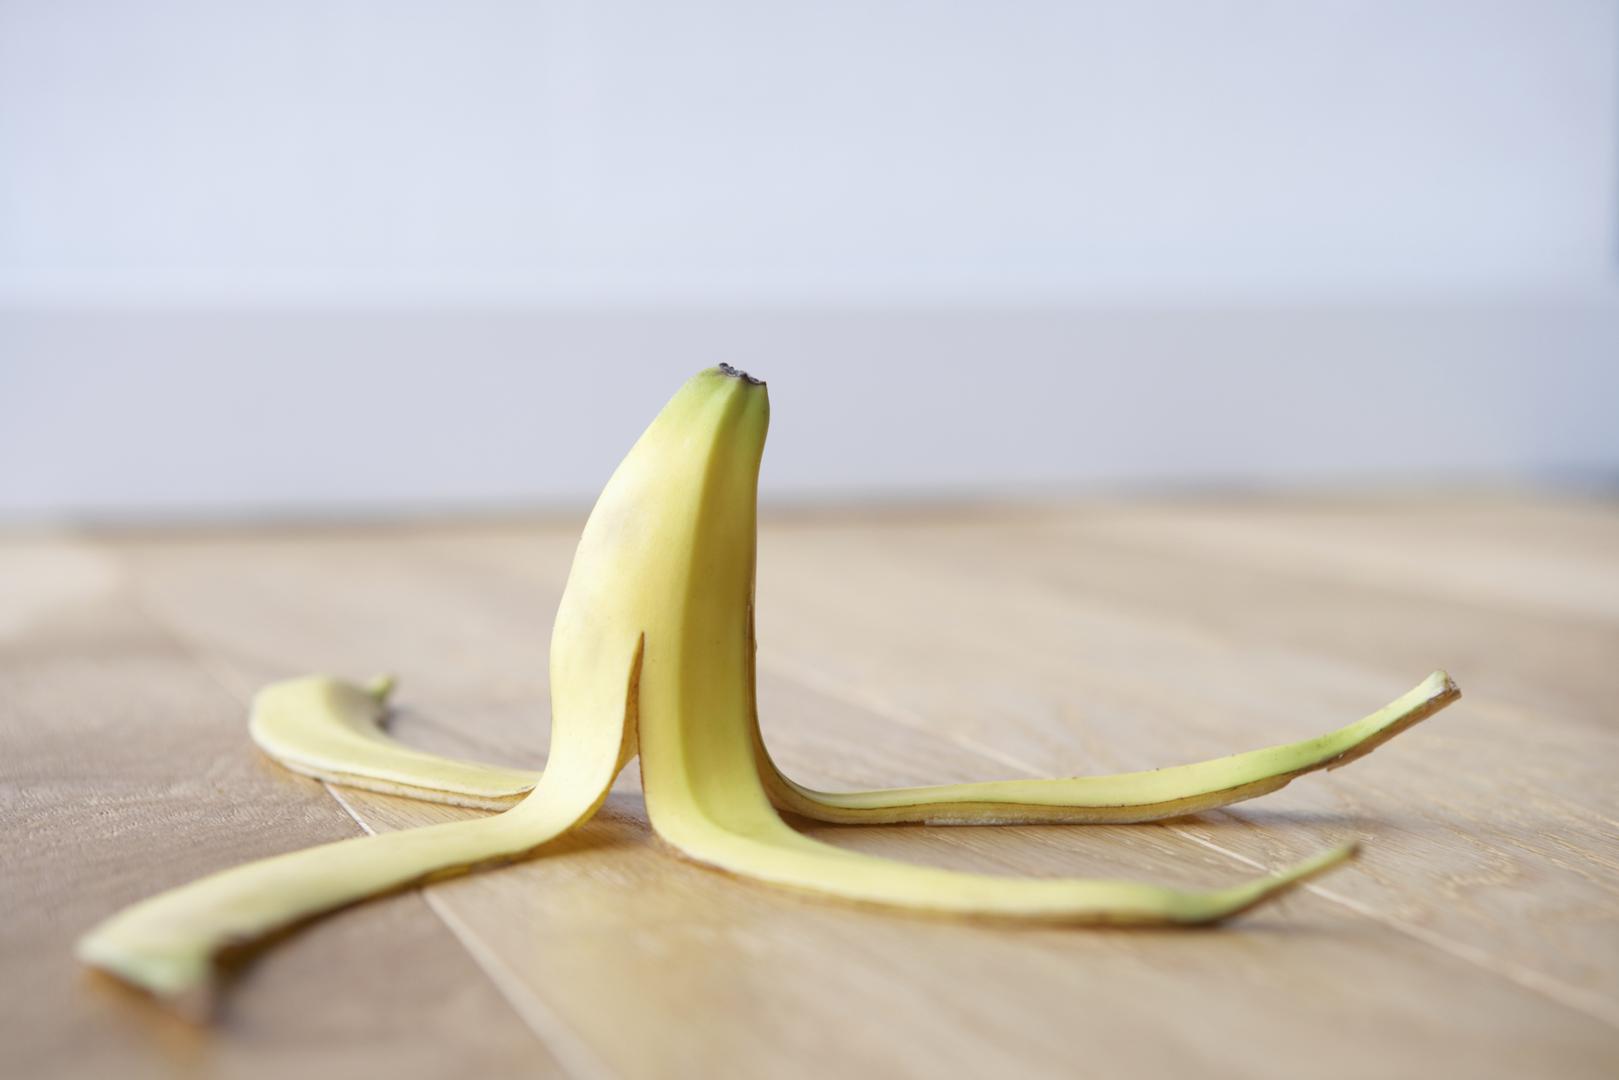 Banana i mlijeko imaju energiju hlađenja, piše TOI, ali ta kombinacija, koja je mnogima najdraža u pripremi shakeova, u probavnom sustavu može dovesti do tegoba